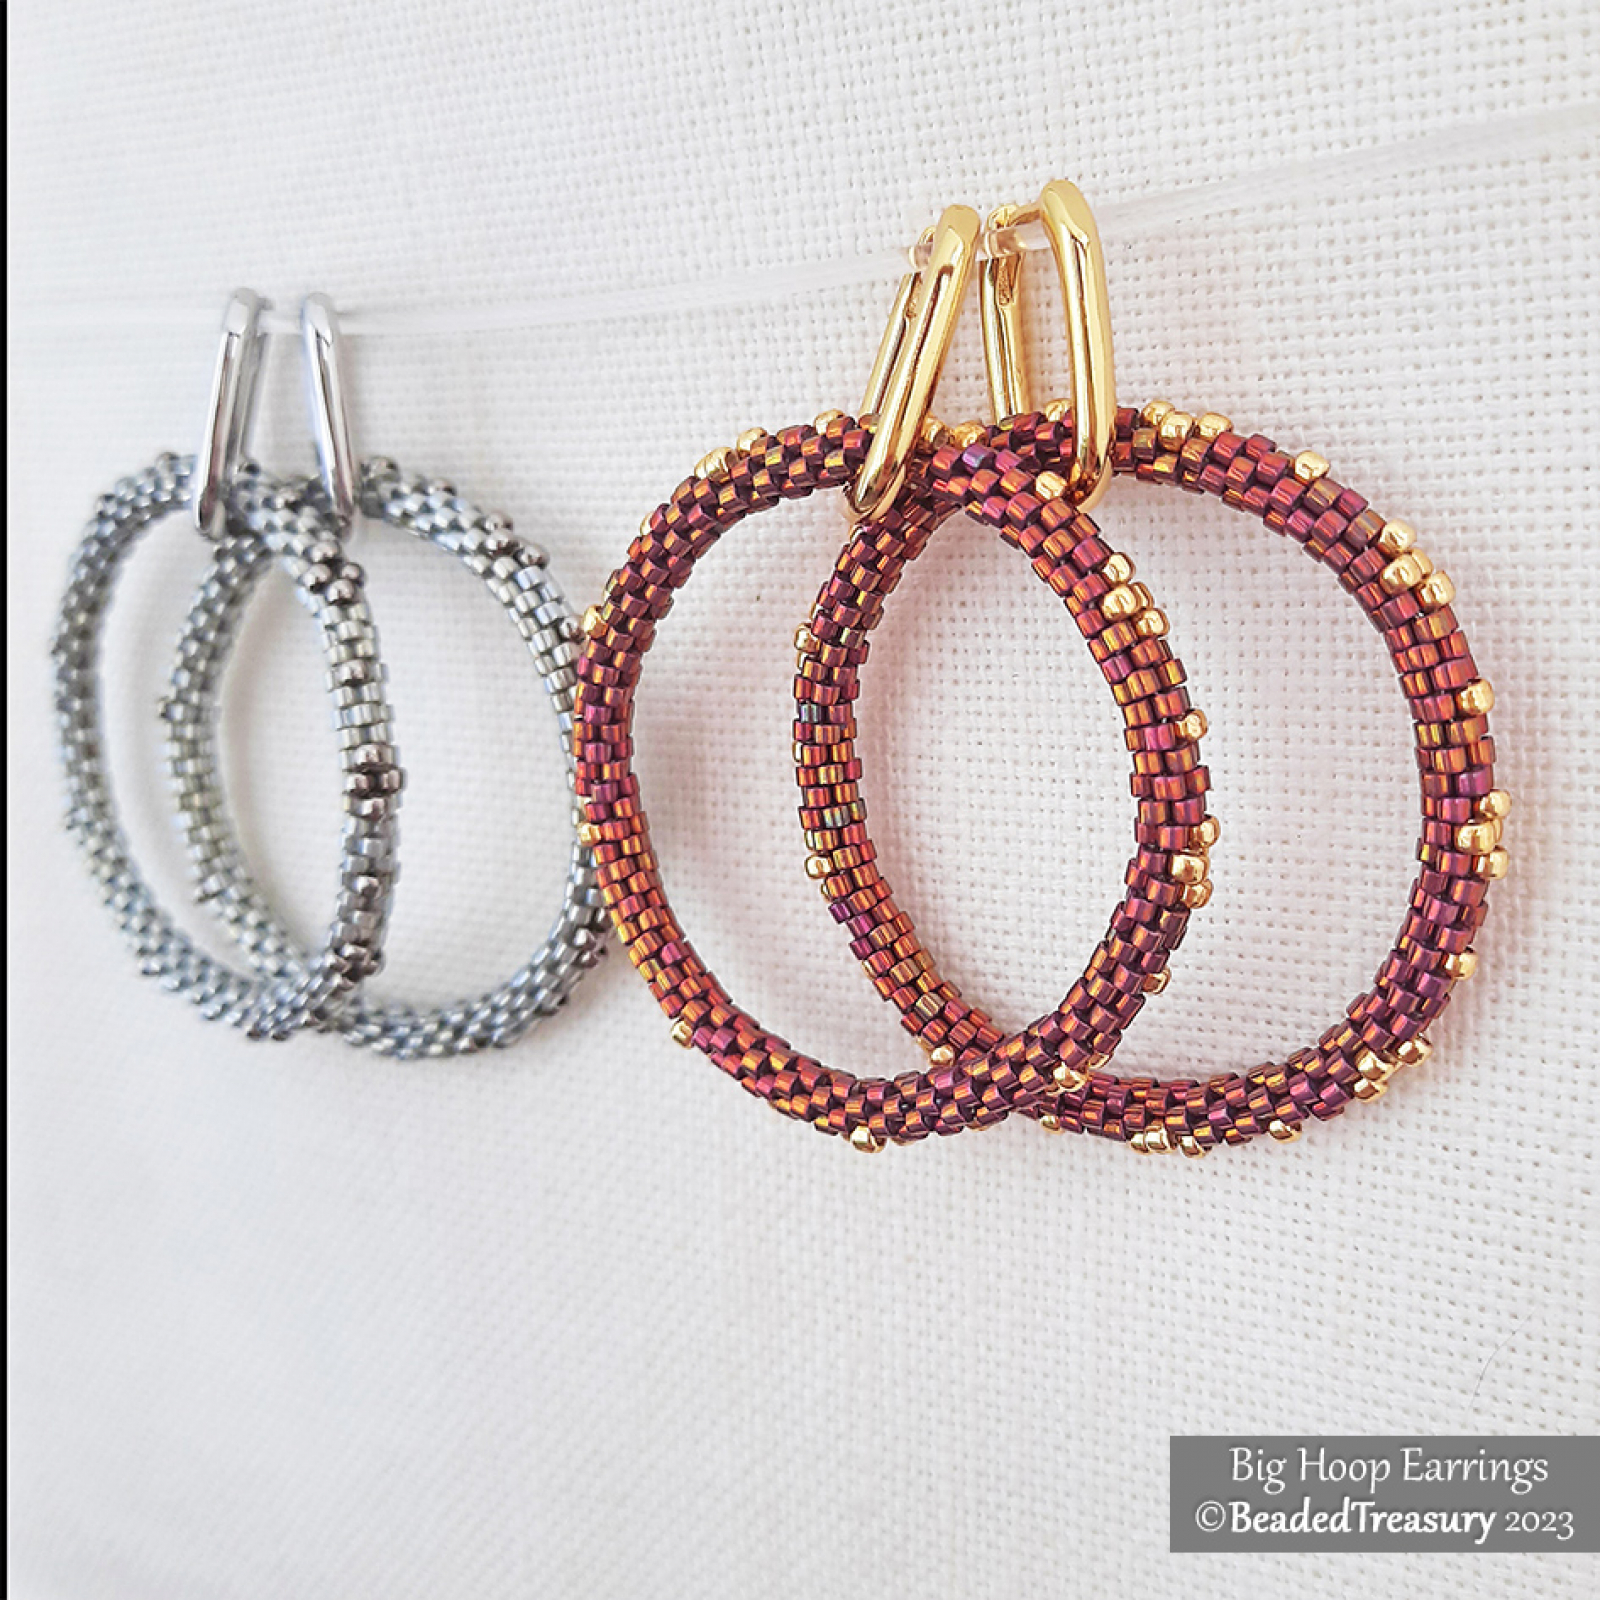 Peyote Hoop Earrings - DIY Jewelry Making Tutorial by PotomacBeads 